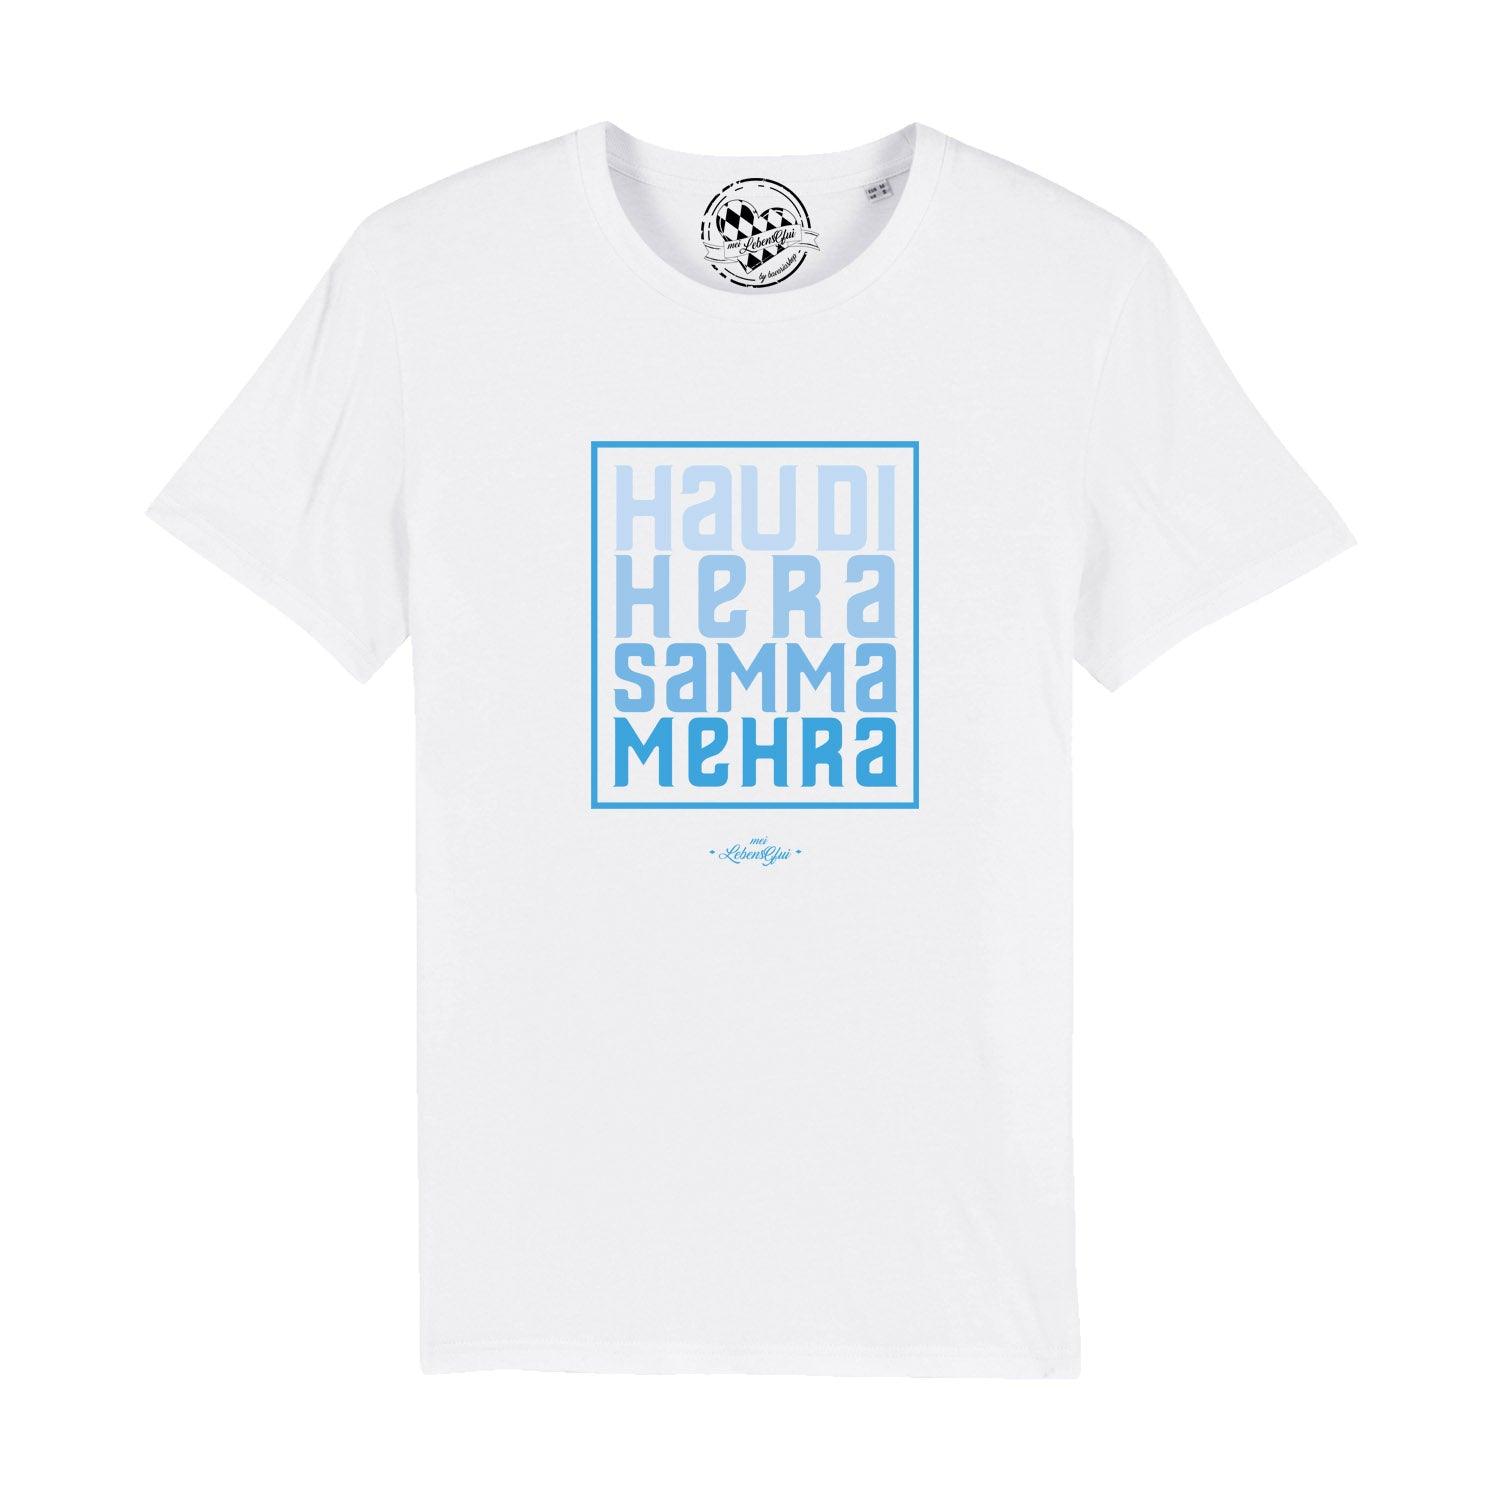 Herren T-Shirt "Hau di hera" - bavariashop - mei LebensGfui